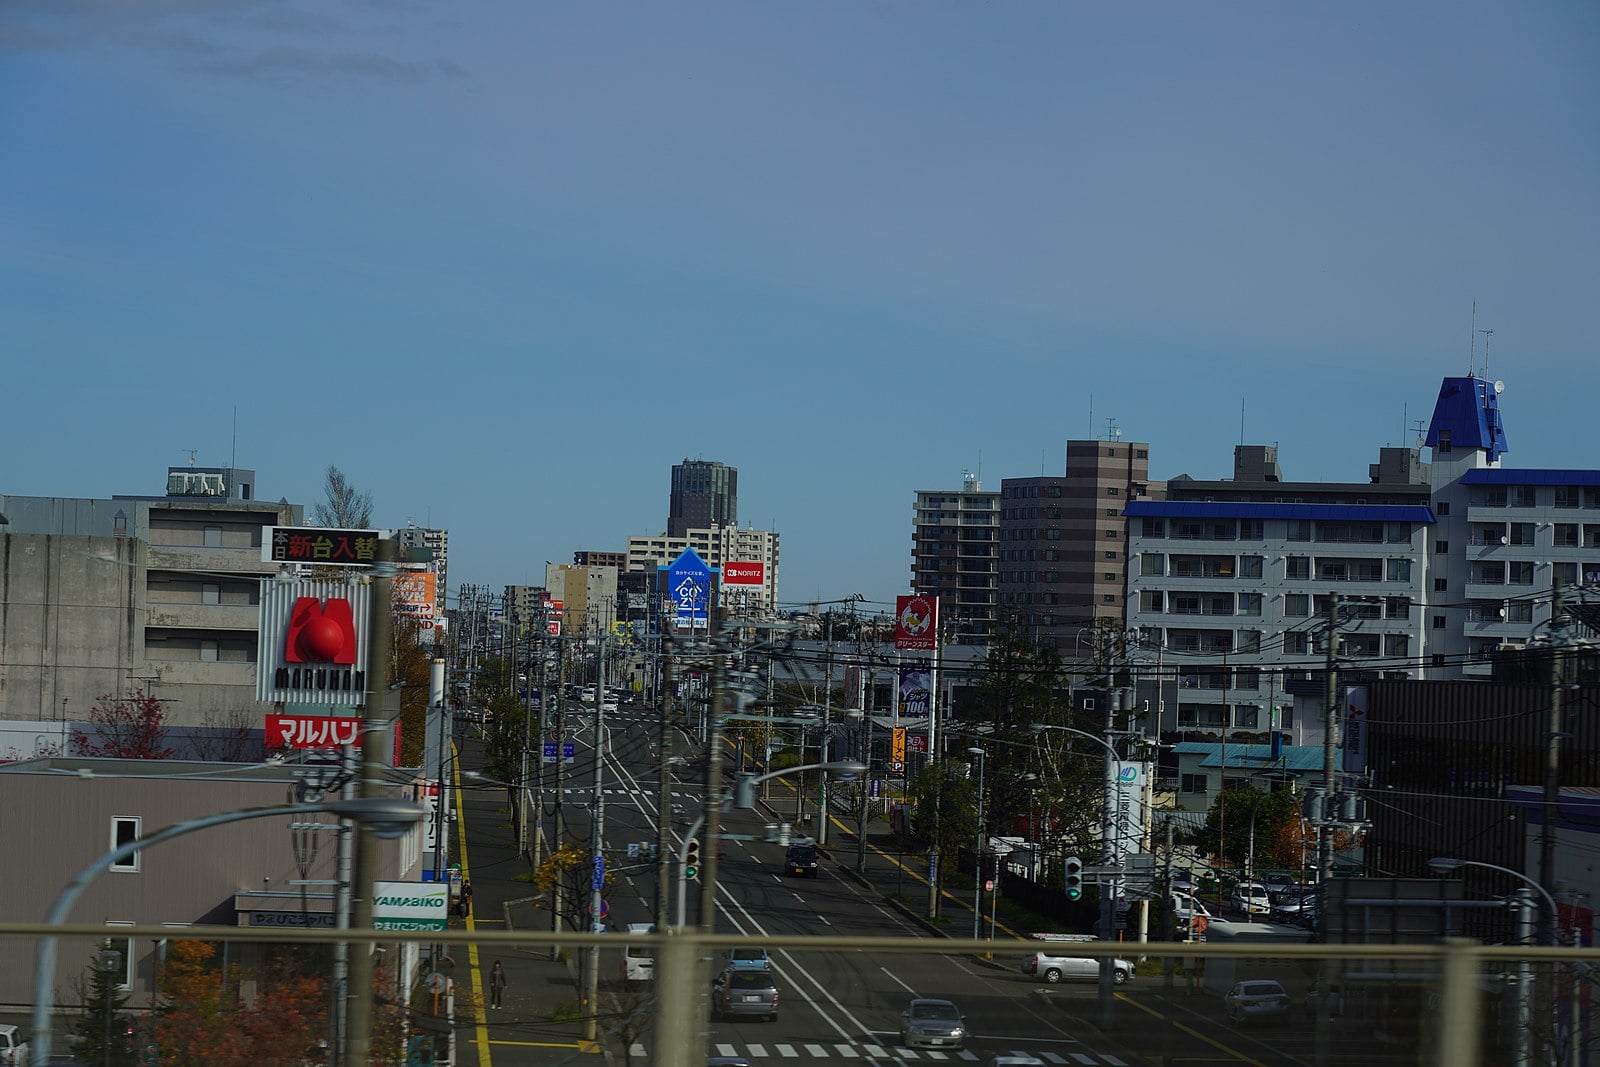 札幌市厚別区